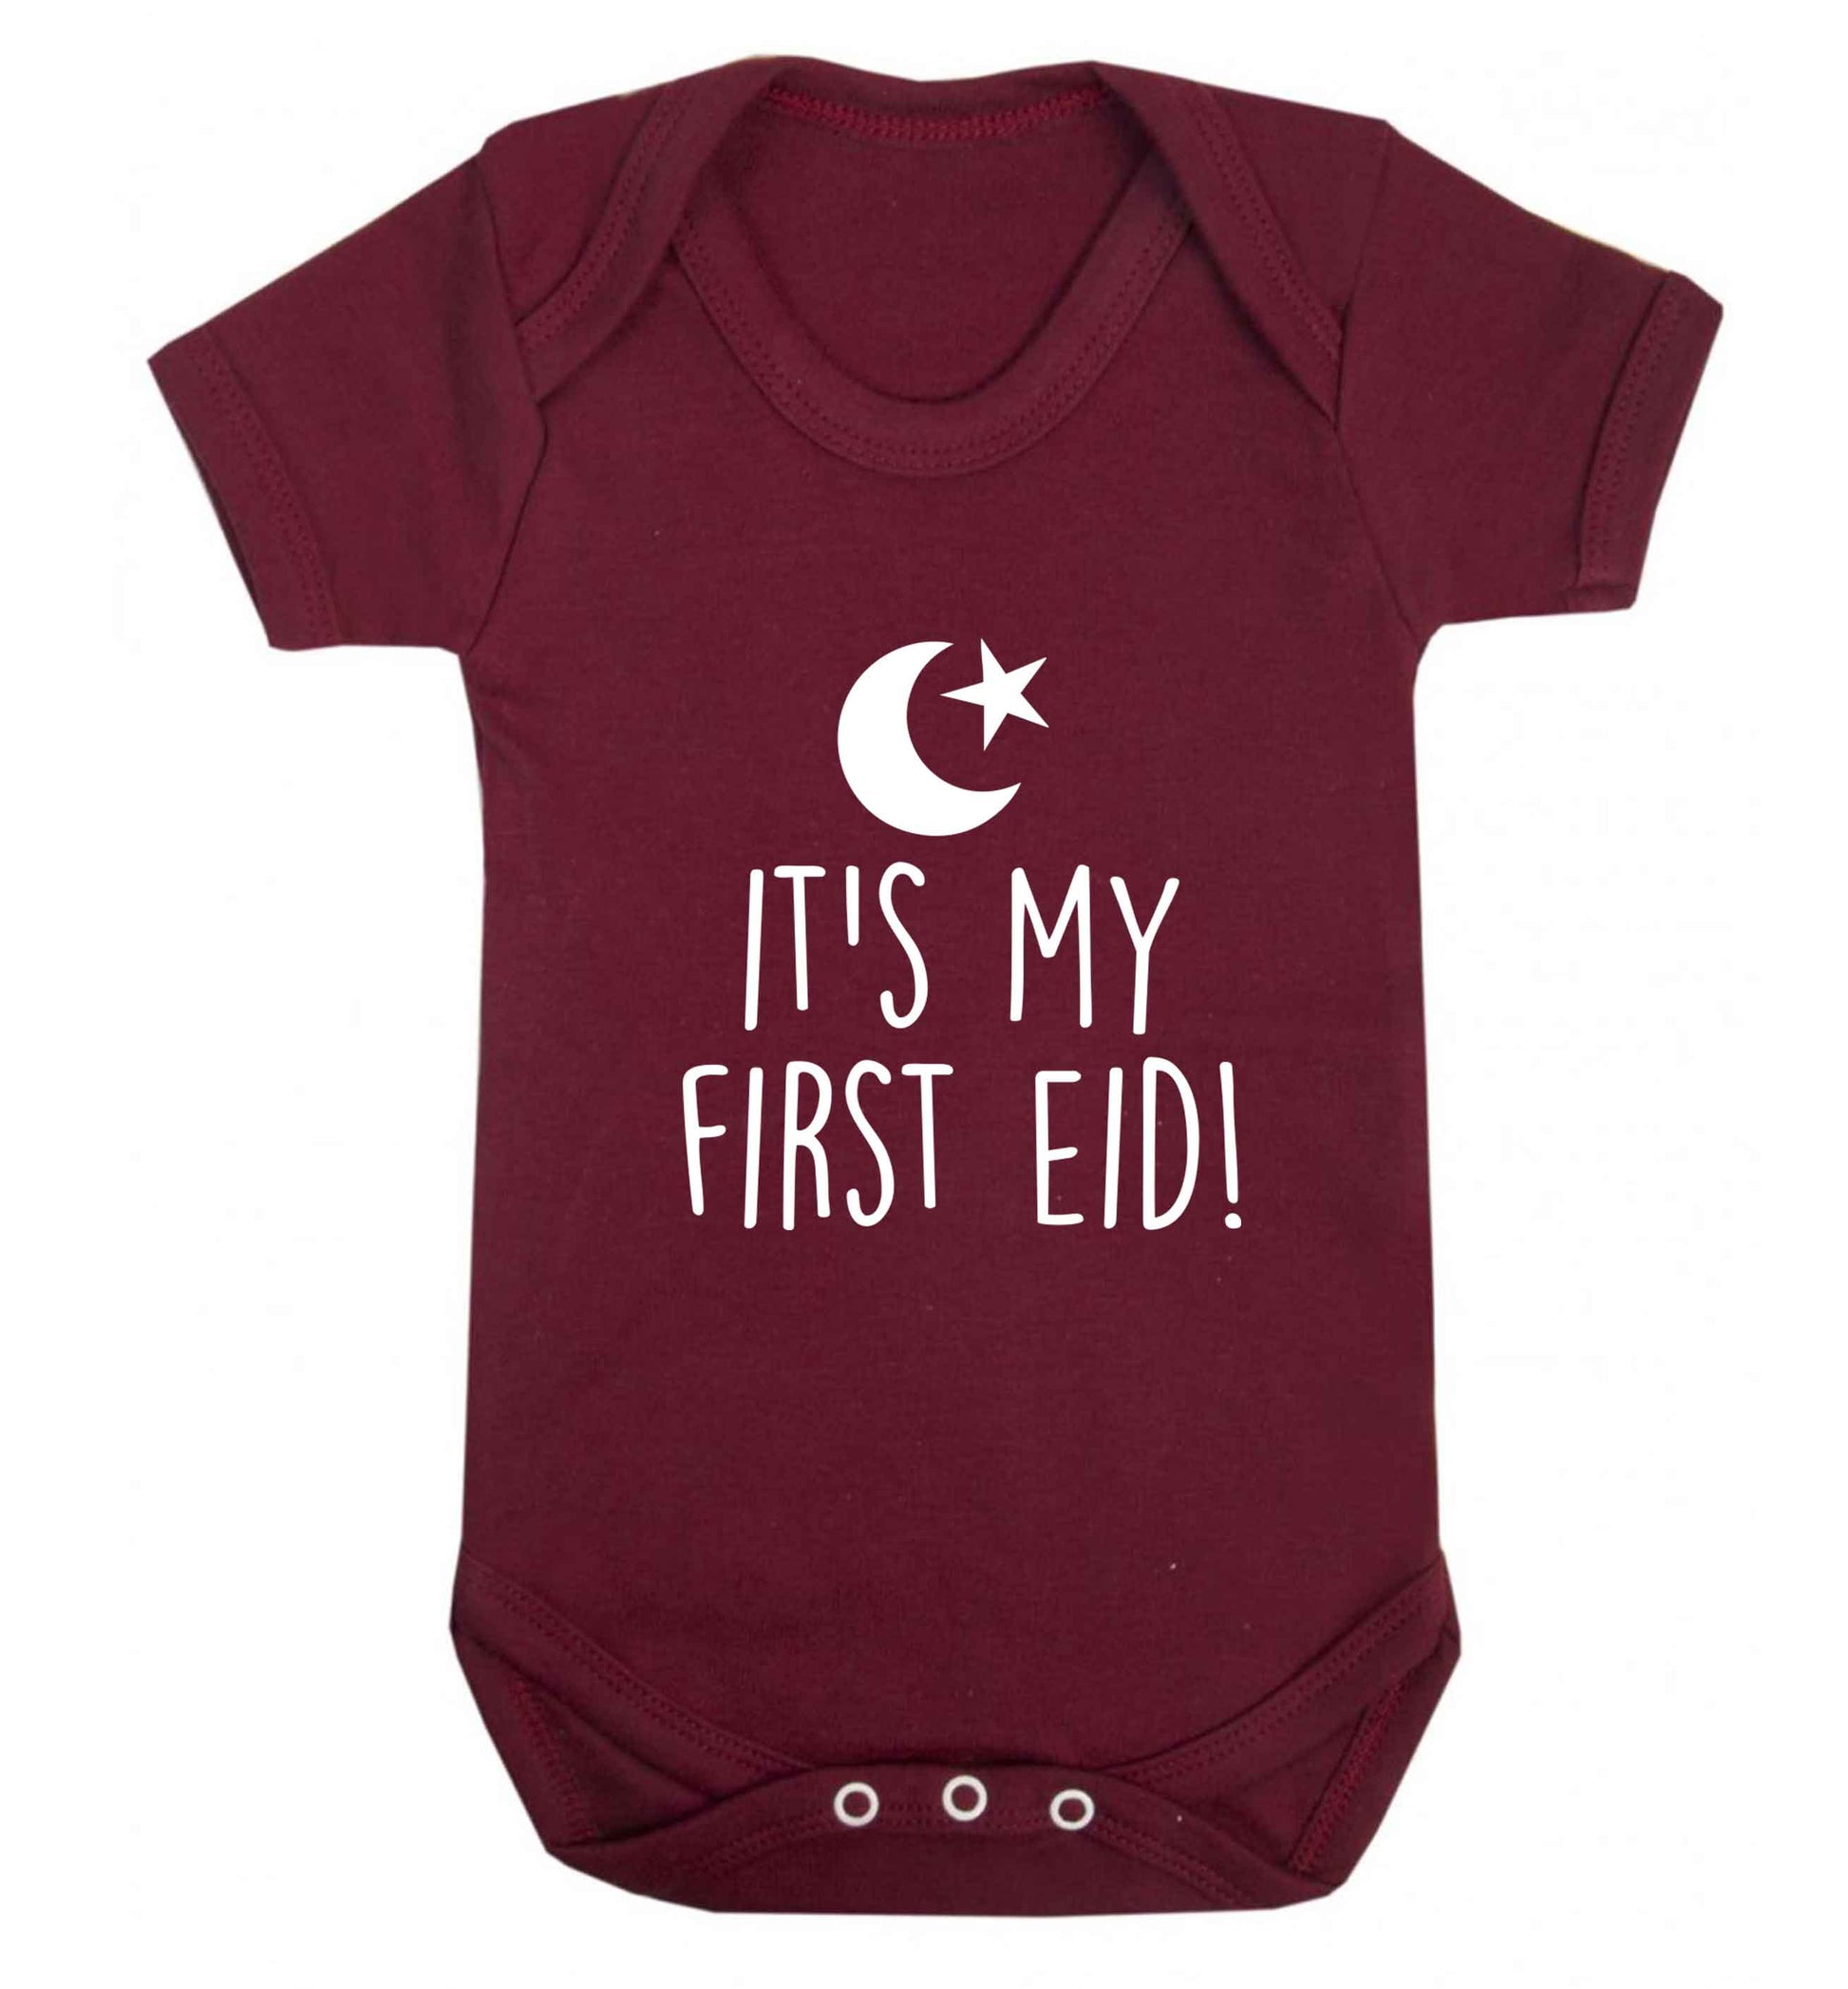 It's my first Eid baby vest maroon 18-24 months